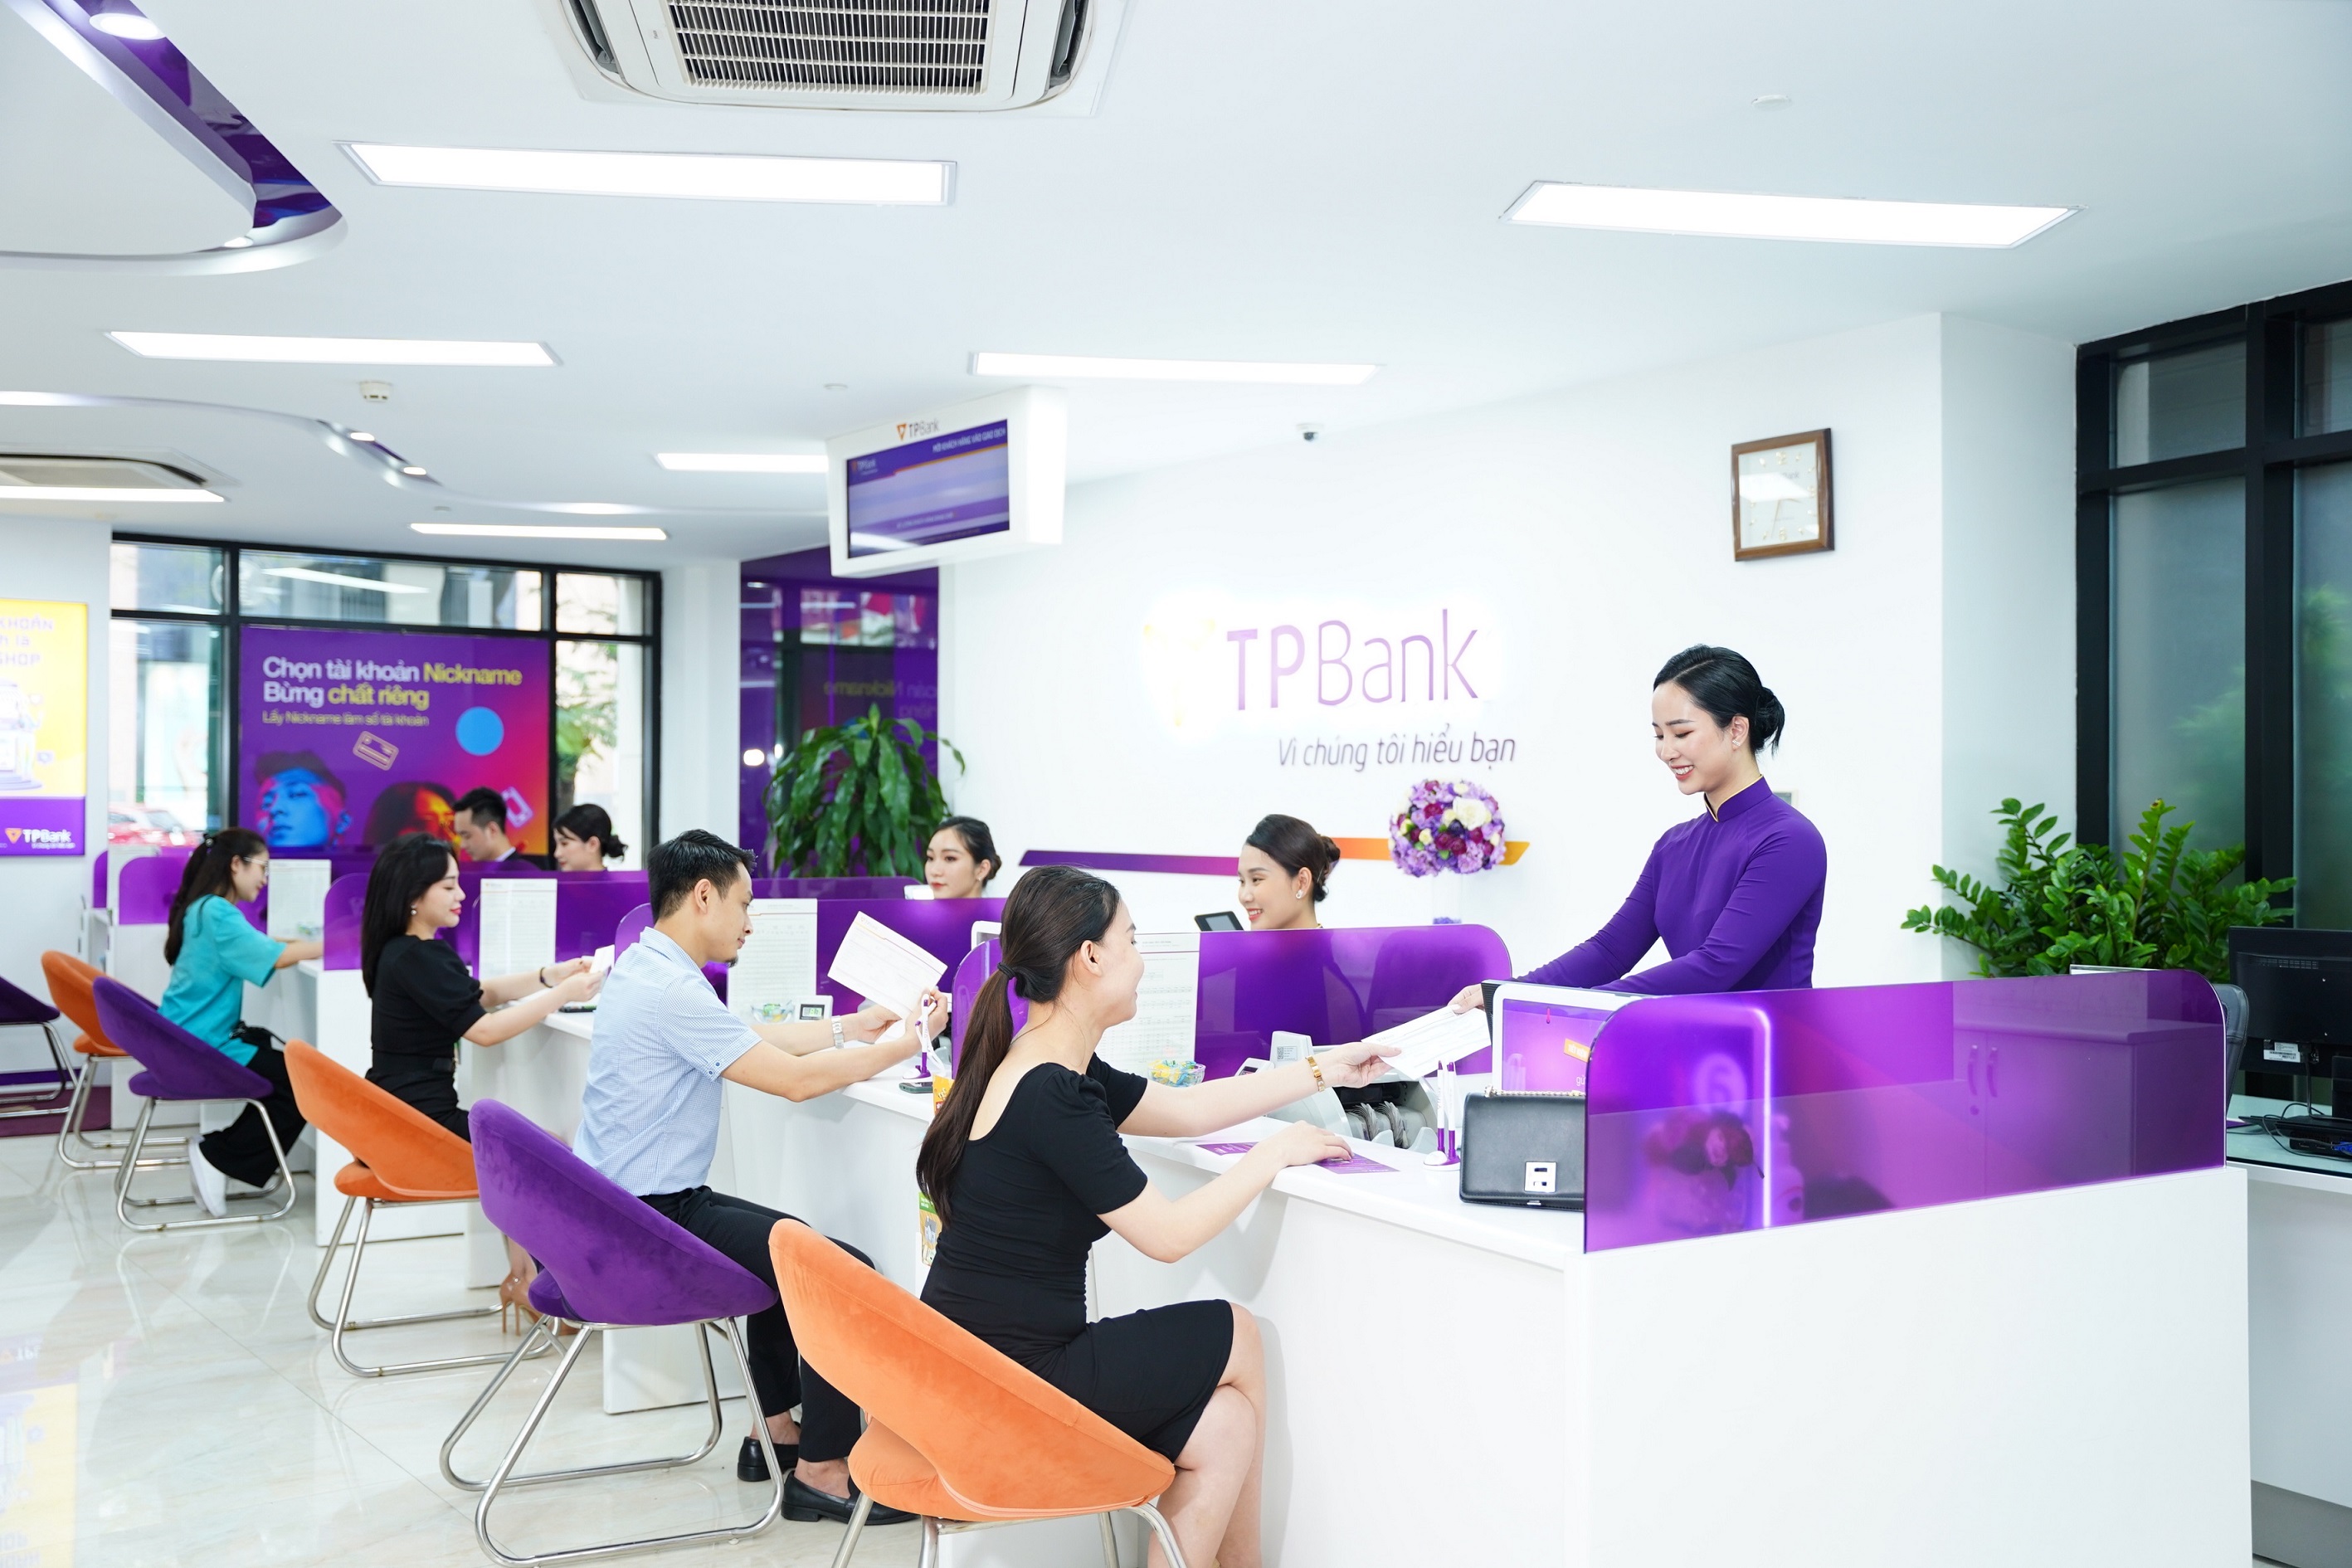 Tài chính - Ngân hàng - Đổi mới số giúp TPBank là một trong những ngân hàng uy tín nhất